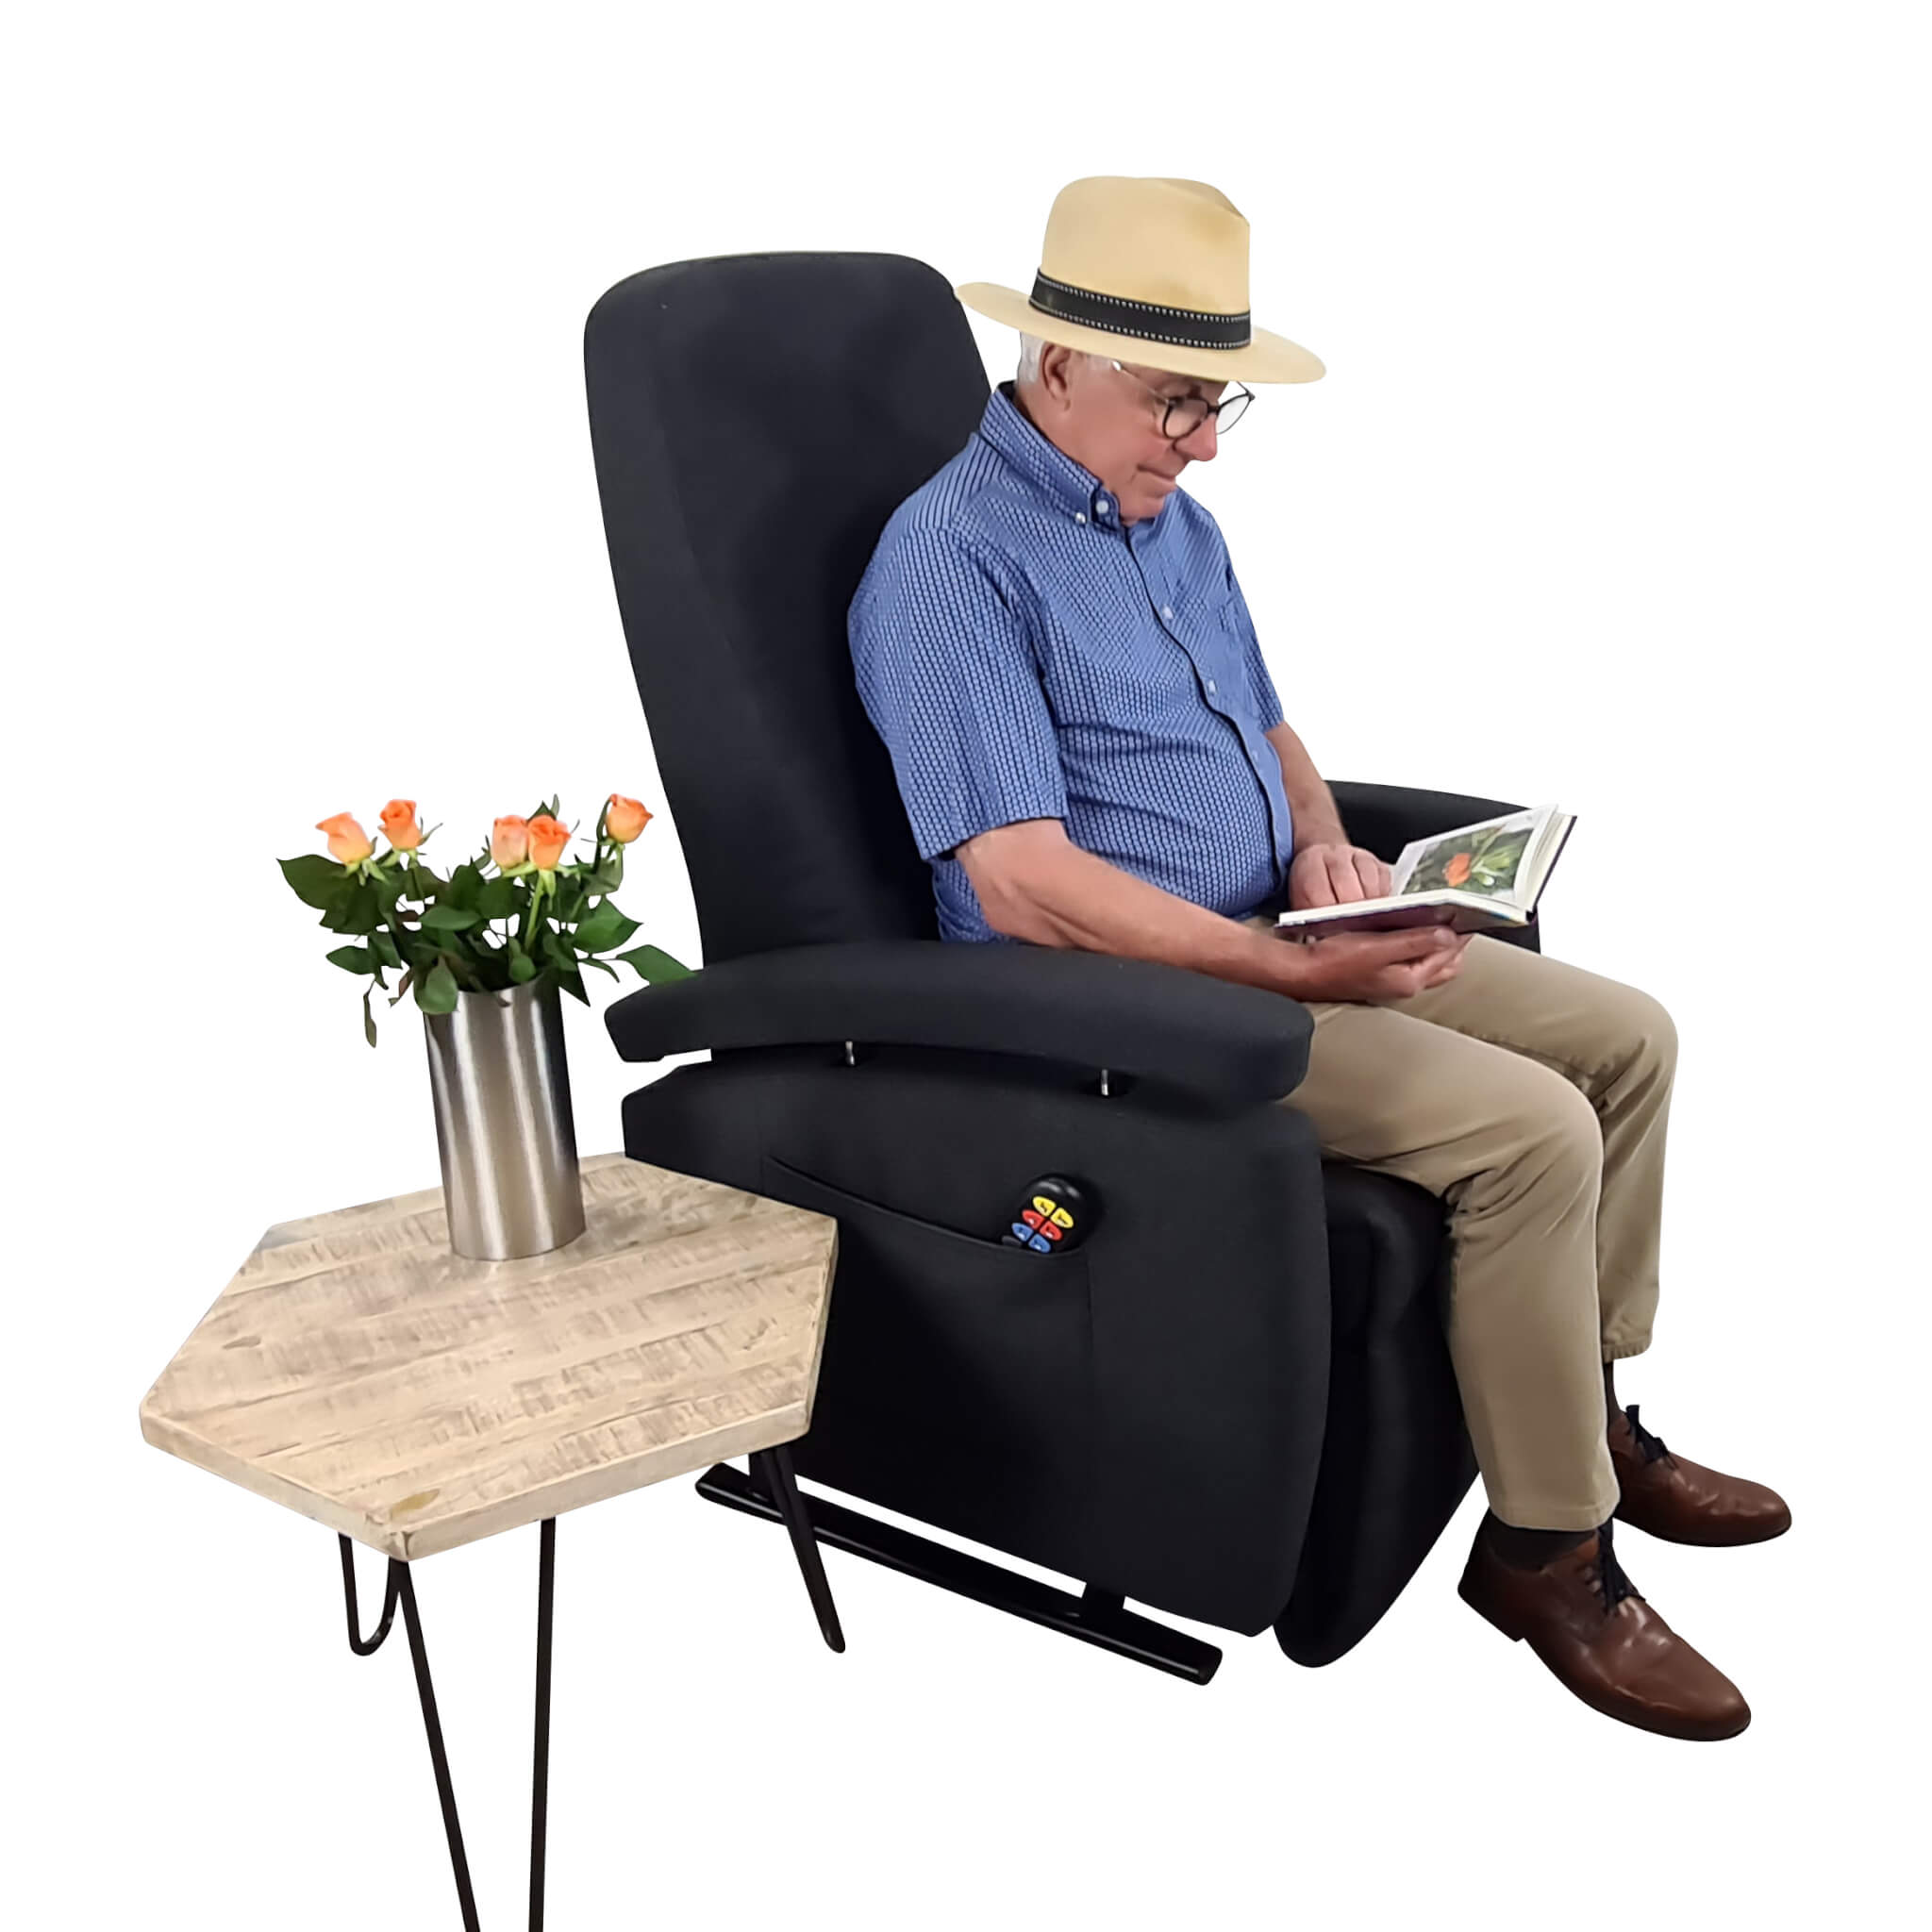 Sta-op stoel modern antraciet (51cm) Opties gratis proberen. Incl nekkussen Zeker Zit, sta-op stoel huren